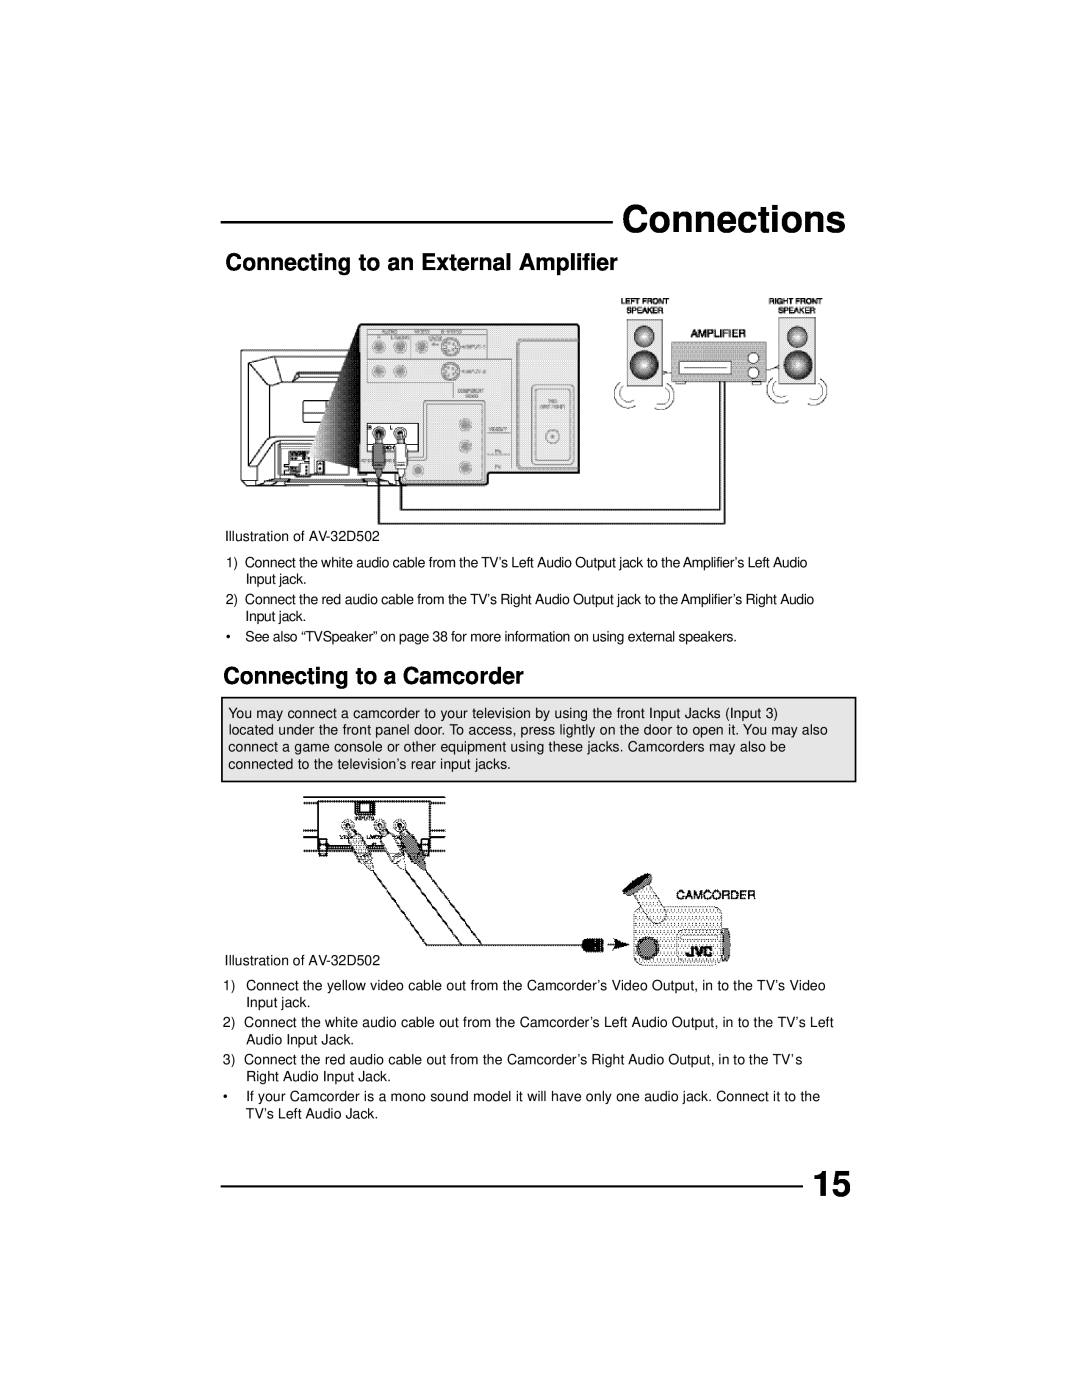 JVC AV 36D502, AV 36D202, AV 36D302, AV 32D302 Connecting to an External Amplifier, Connecting to a Camcorder, Connections 